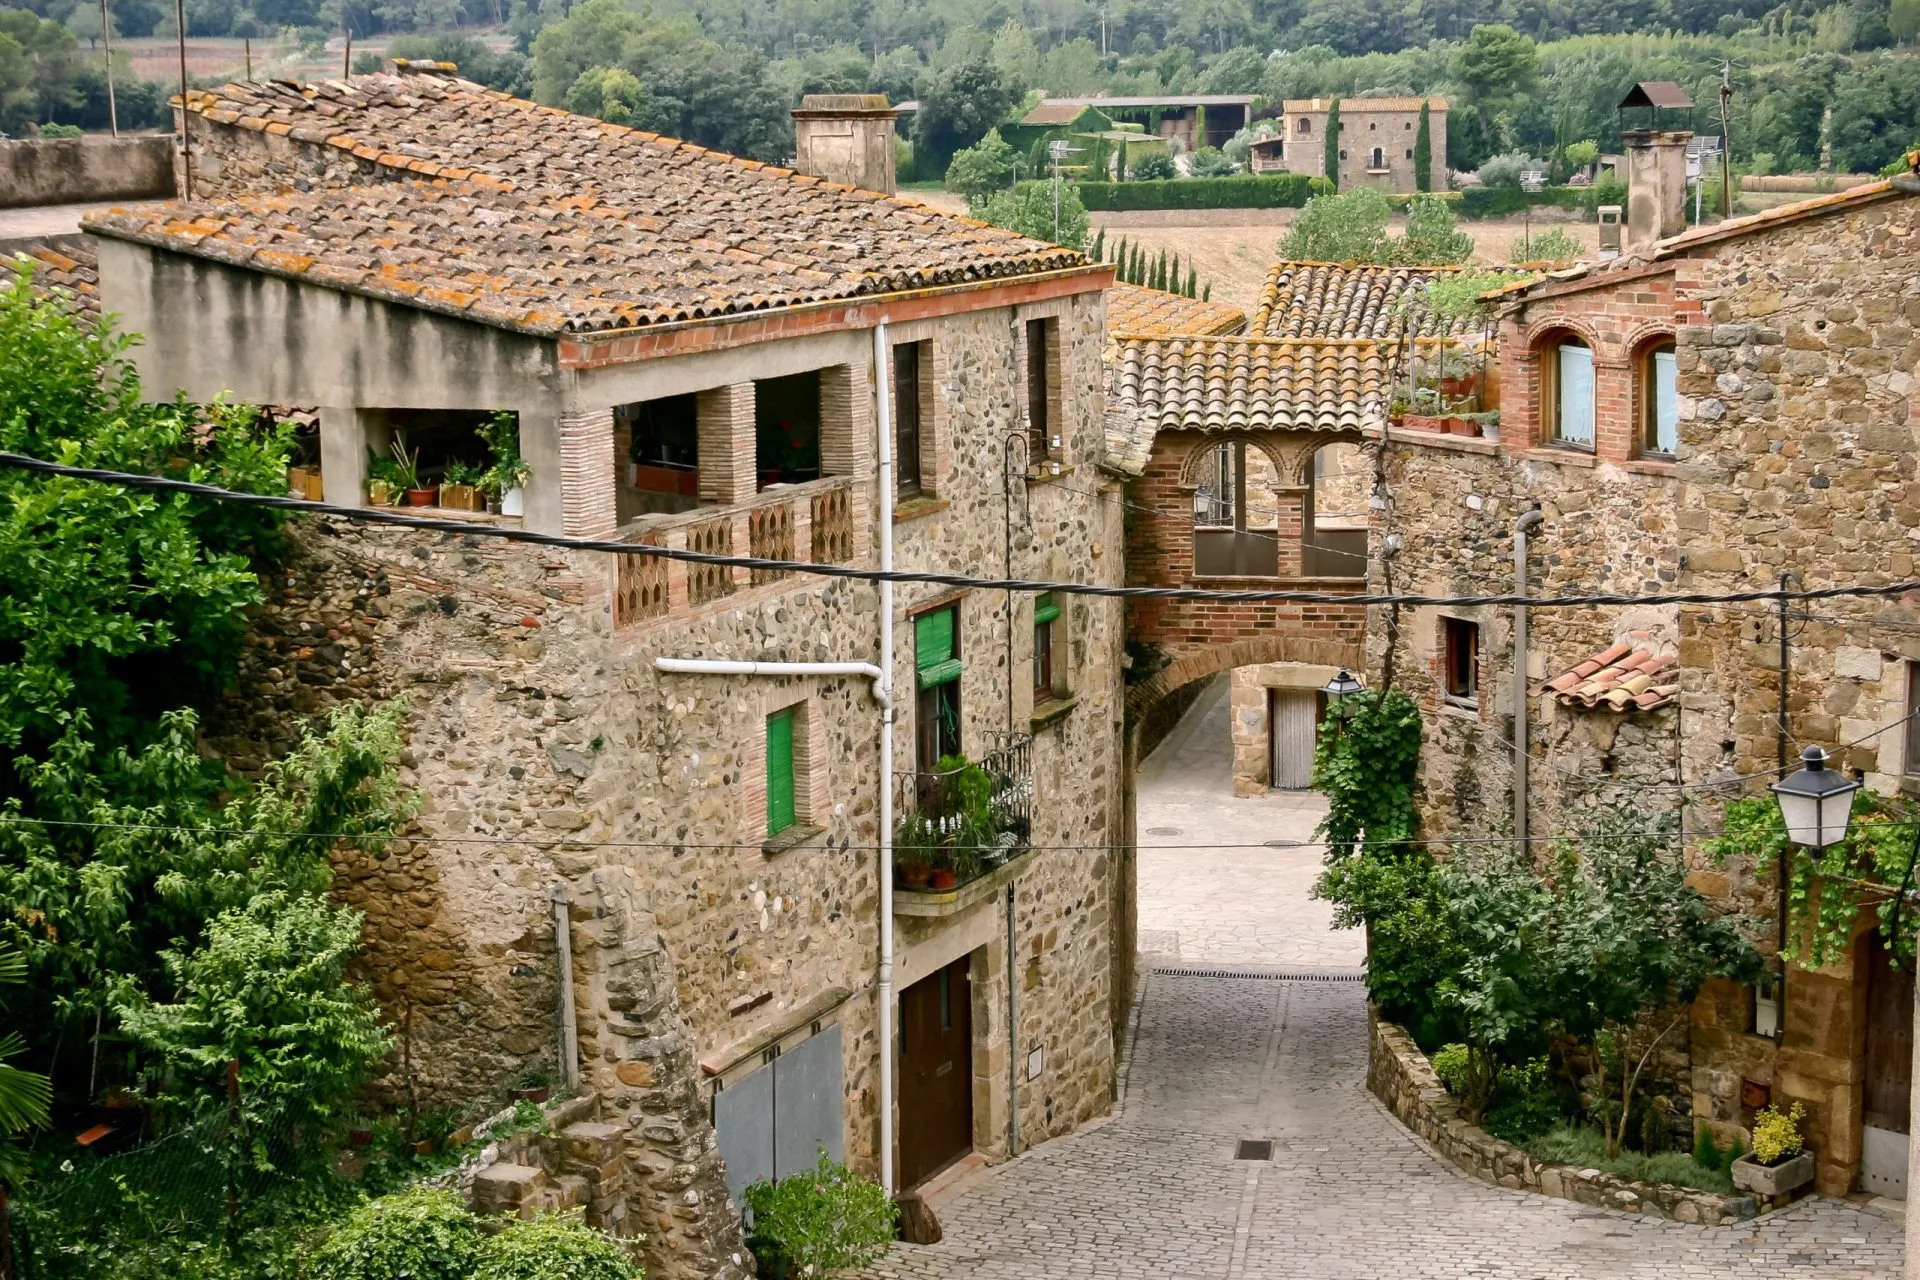 Strada pittoresca nel villaggio spagnolo di Pubol.